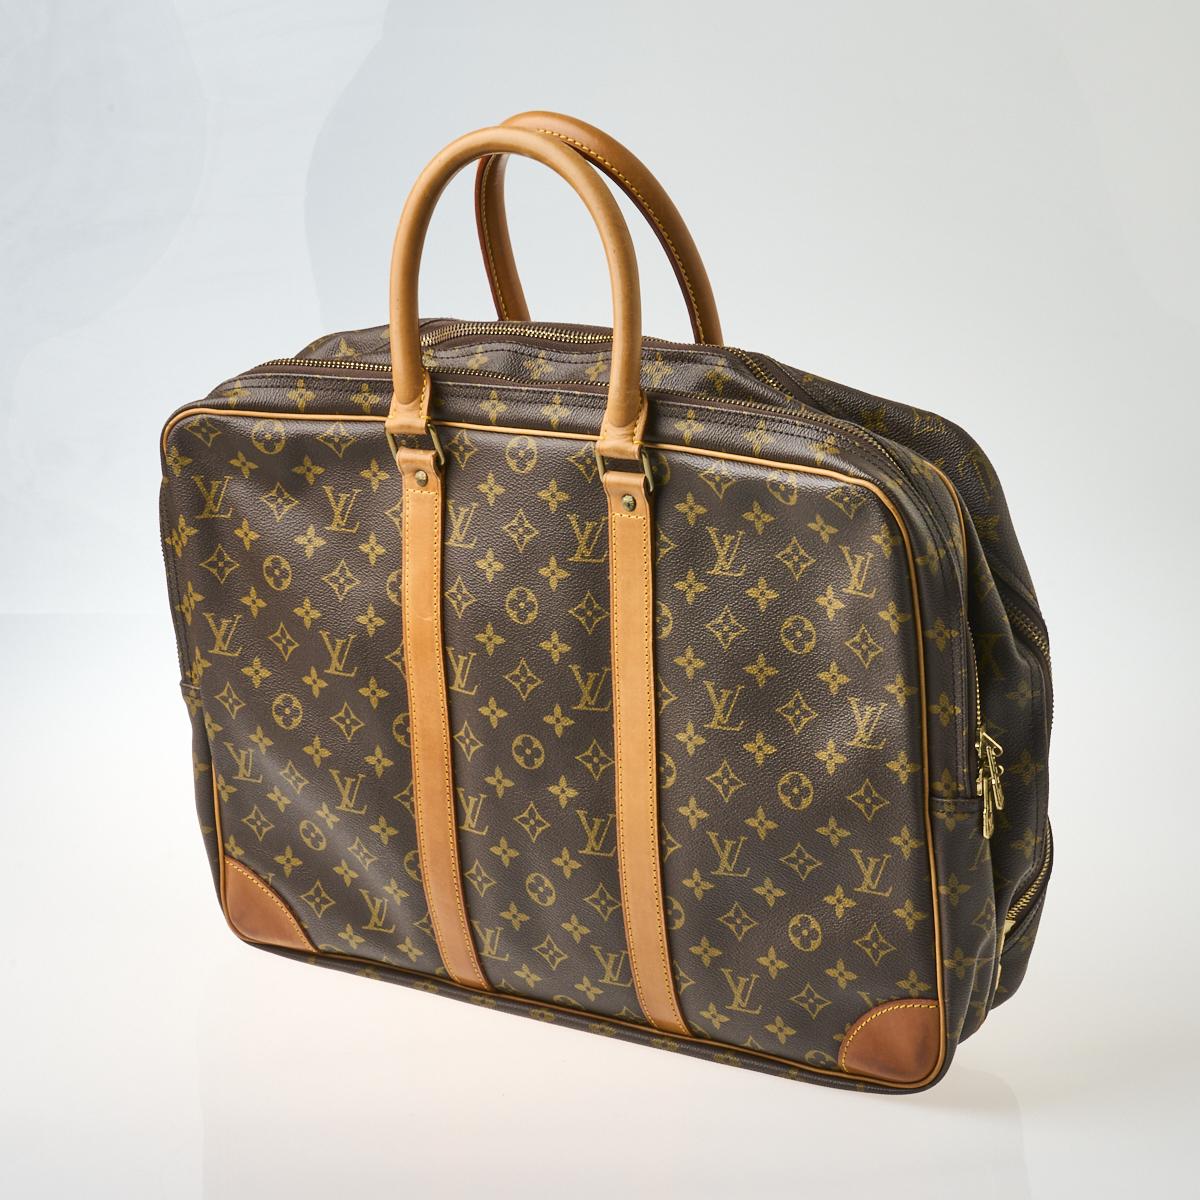 Lot - Louis Vuitton Monogram Canvas Travel Bag